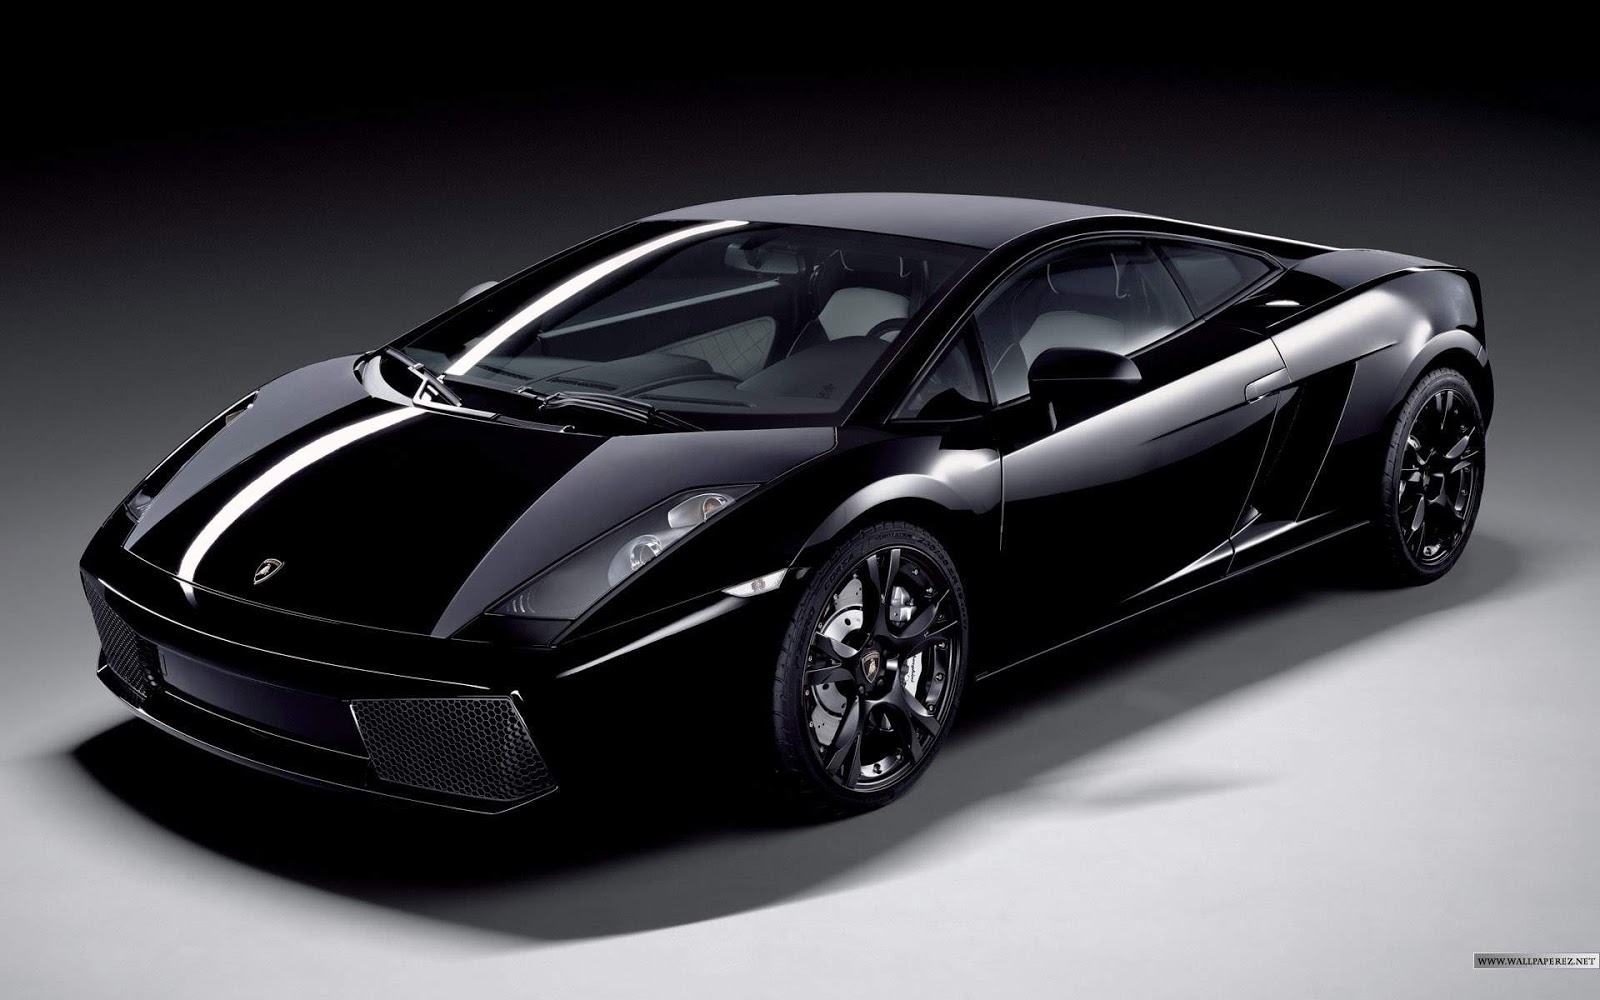 http://2.bp.blogspot.com/-30LtCU1cVwQ/UIWYrFKewuI/AAAAAAAAA3I/Z-GO-jrGV30/s1600/Lamborghini-Gallardo-black-sports-car-hd-desktop-wallpaper.jpg